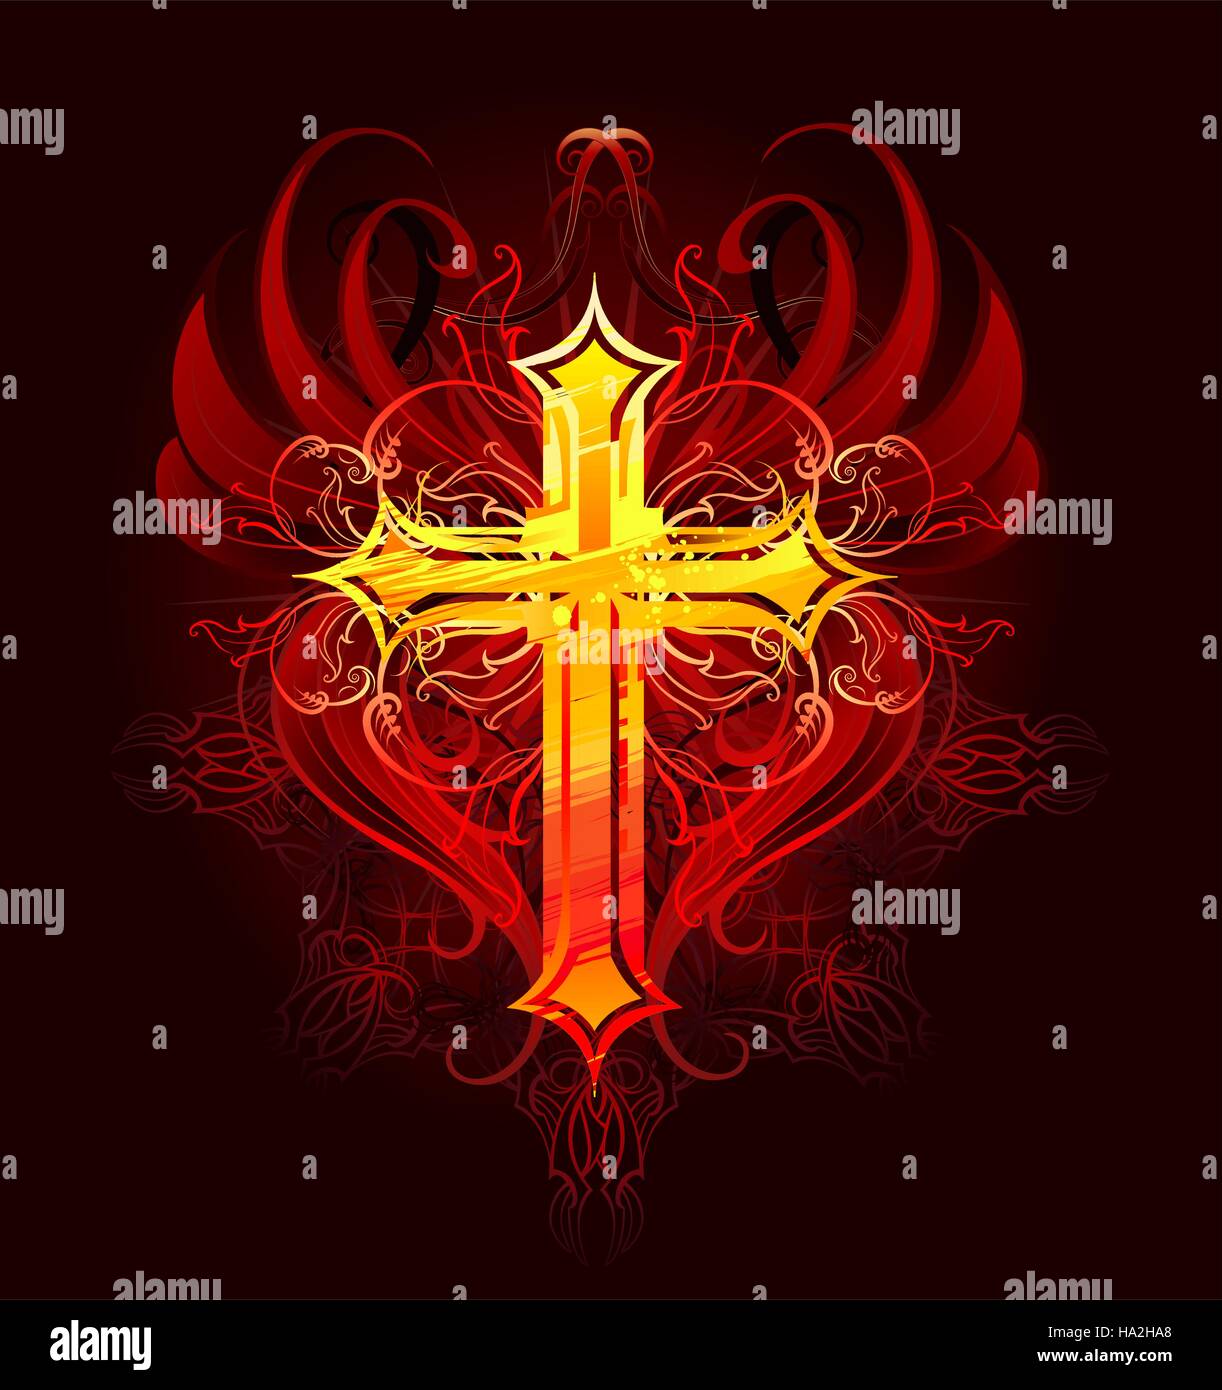 Croix rougeoyante, dessiné par de grands traits de peinture rouge orange et rouge avec des ailes stylisées sur un fond sombre, décoré avec motif foncé Illustration de Vecteur